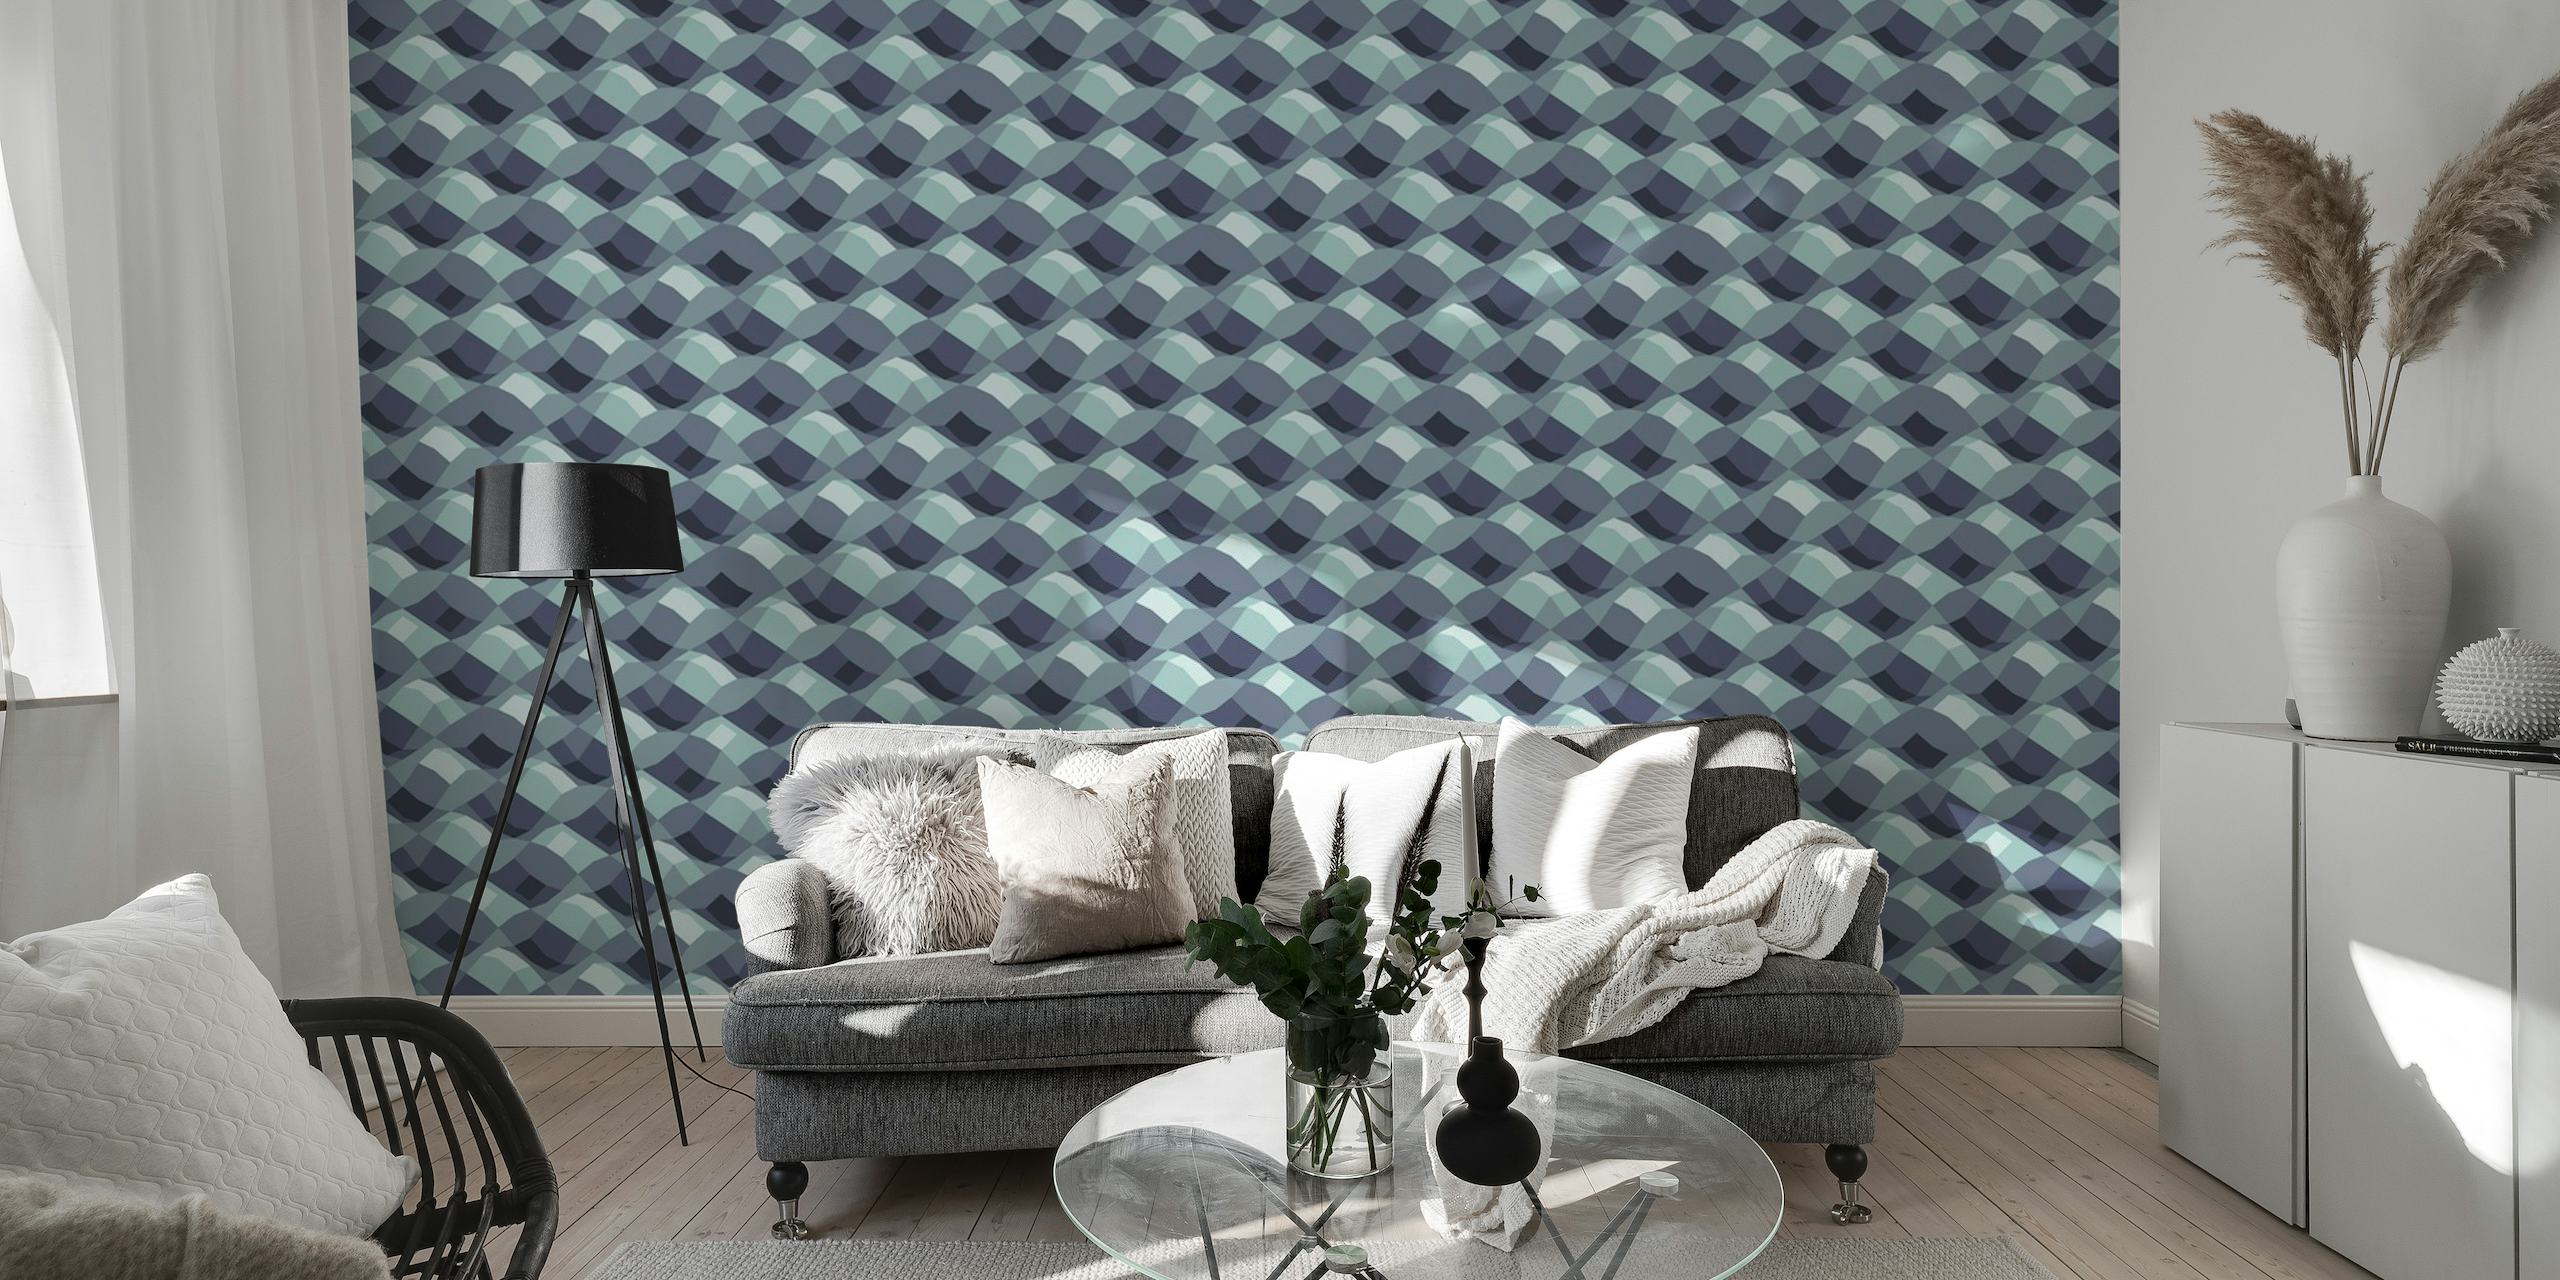 Abstract circular ripple pattern wall mural in shades of grey